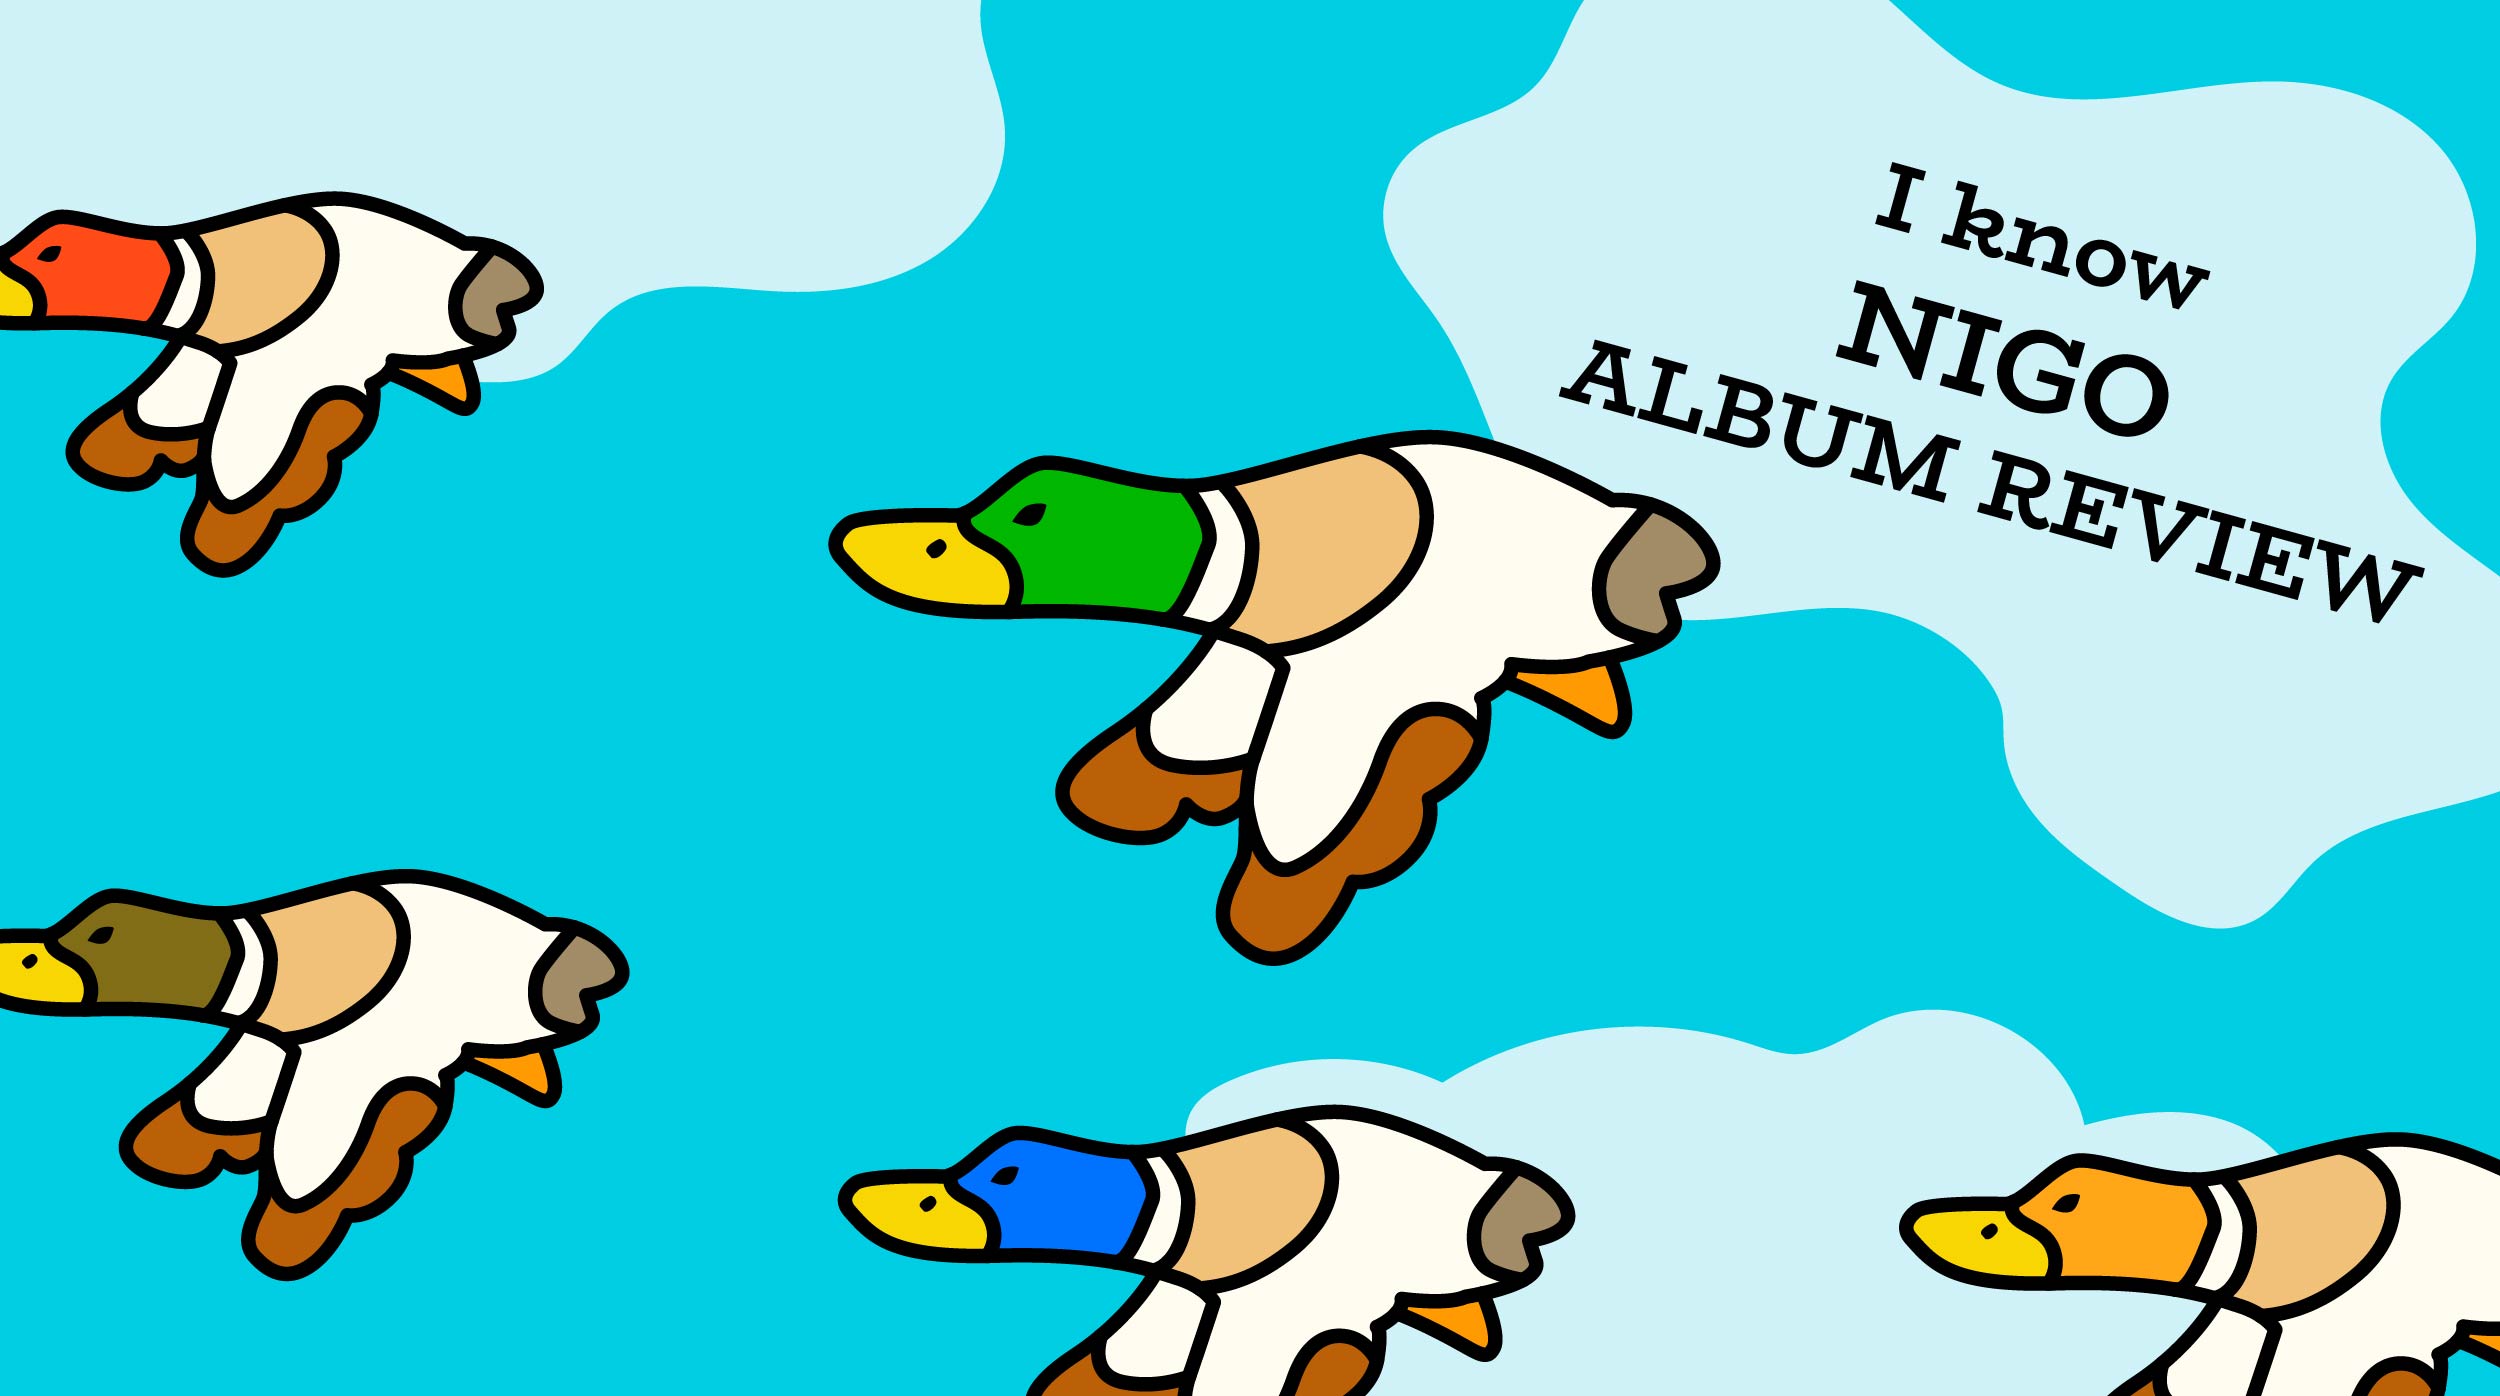 Nigo: I Know NIGO! Album Review